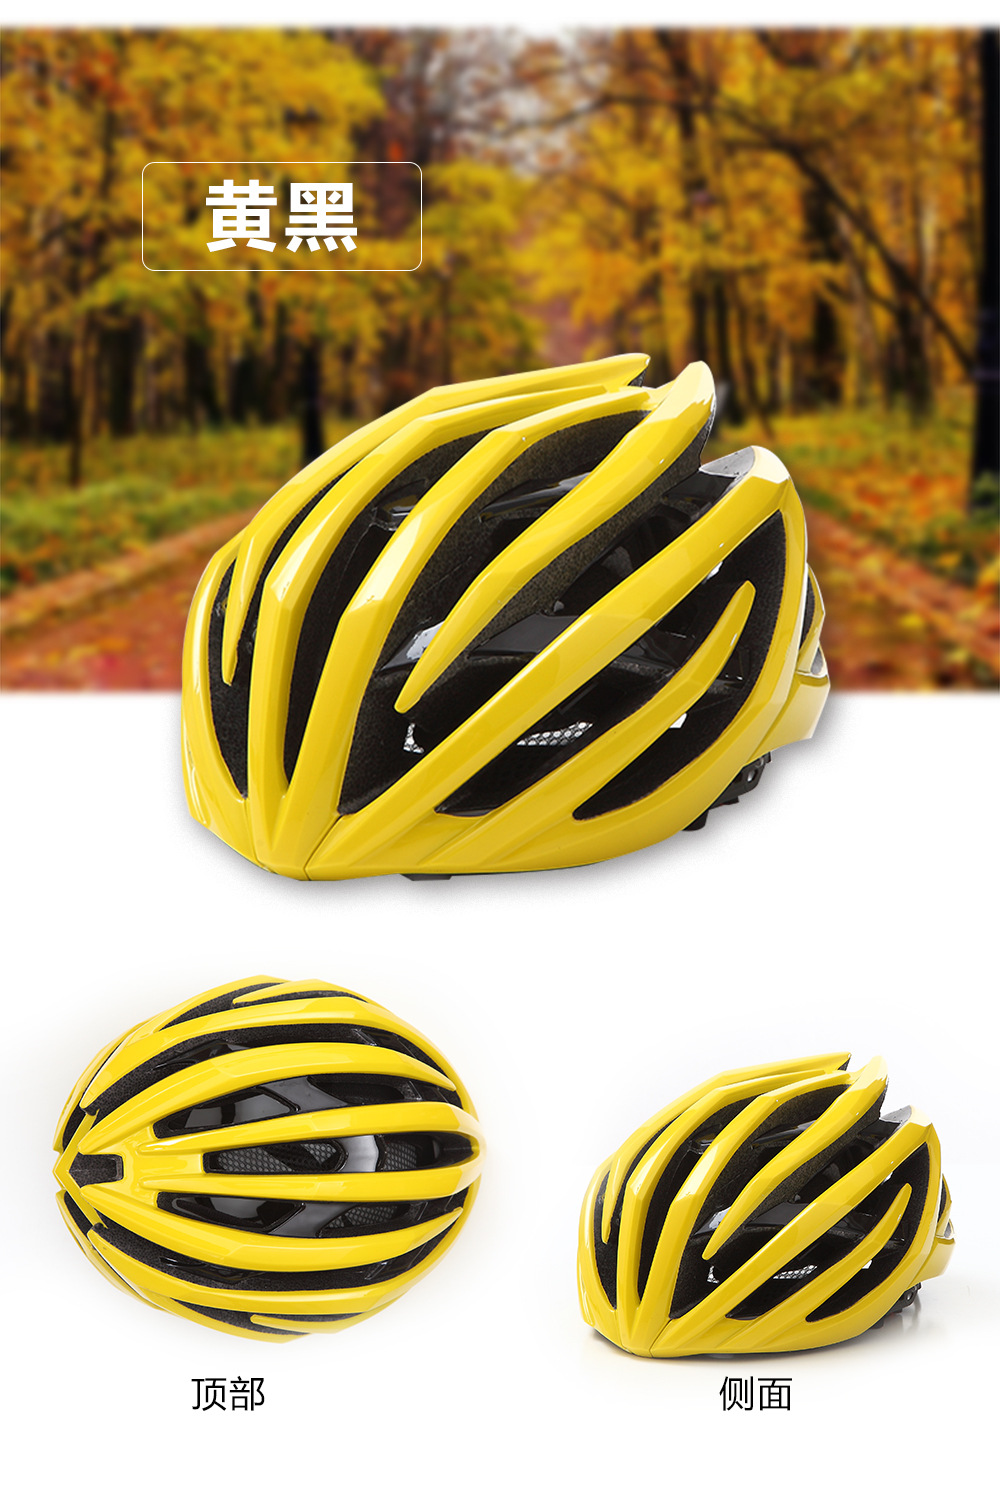 自行车头盔 一体成型头盔 安全头盔 滑轮头盔公路头盔骑行头盔示例图5